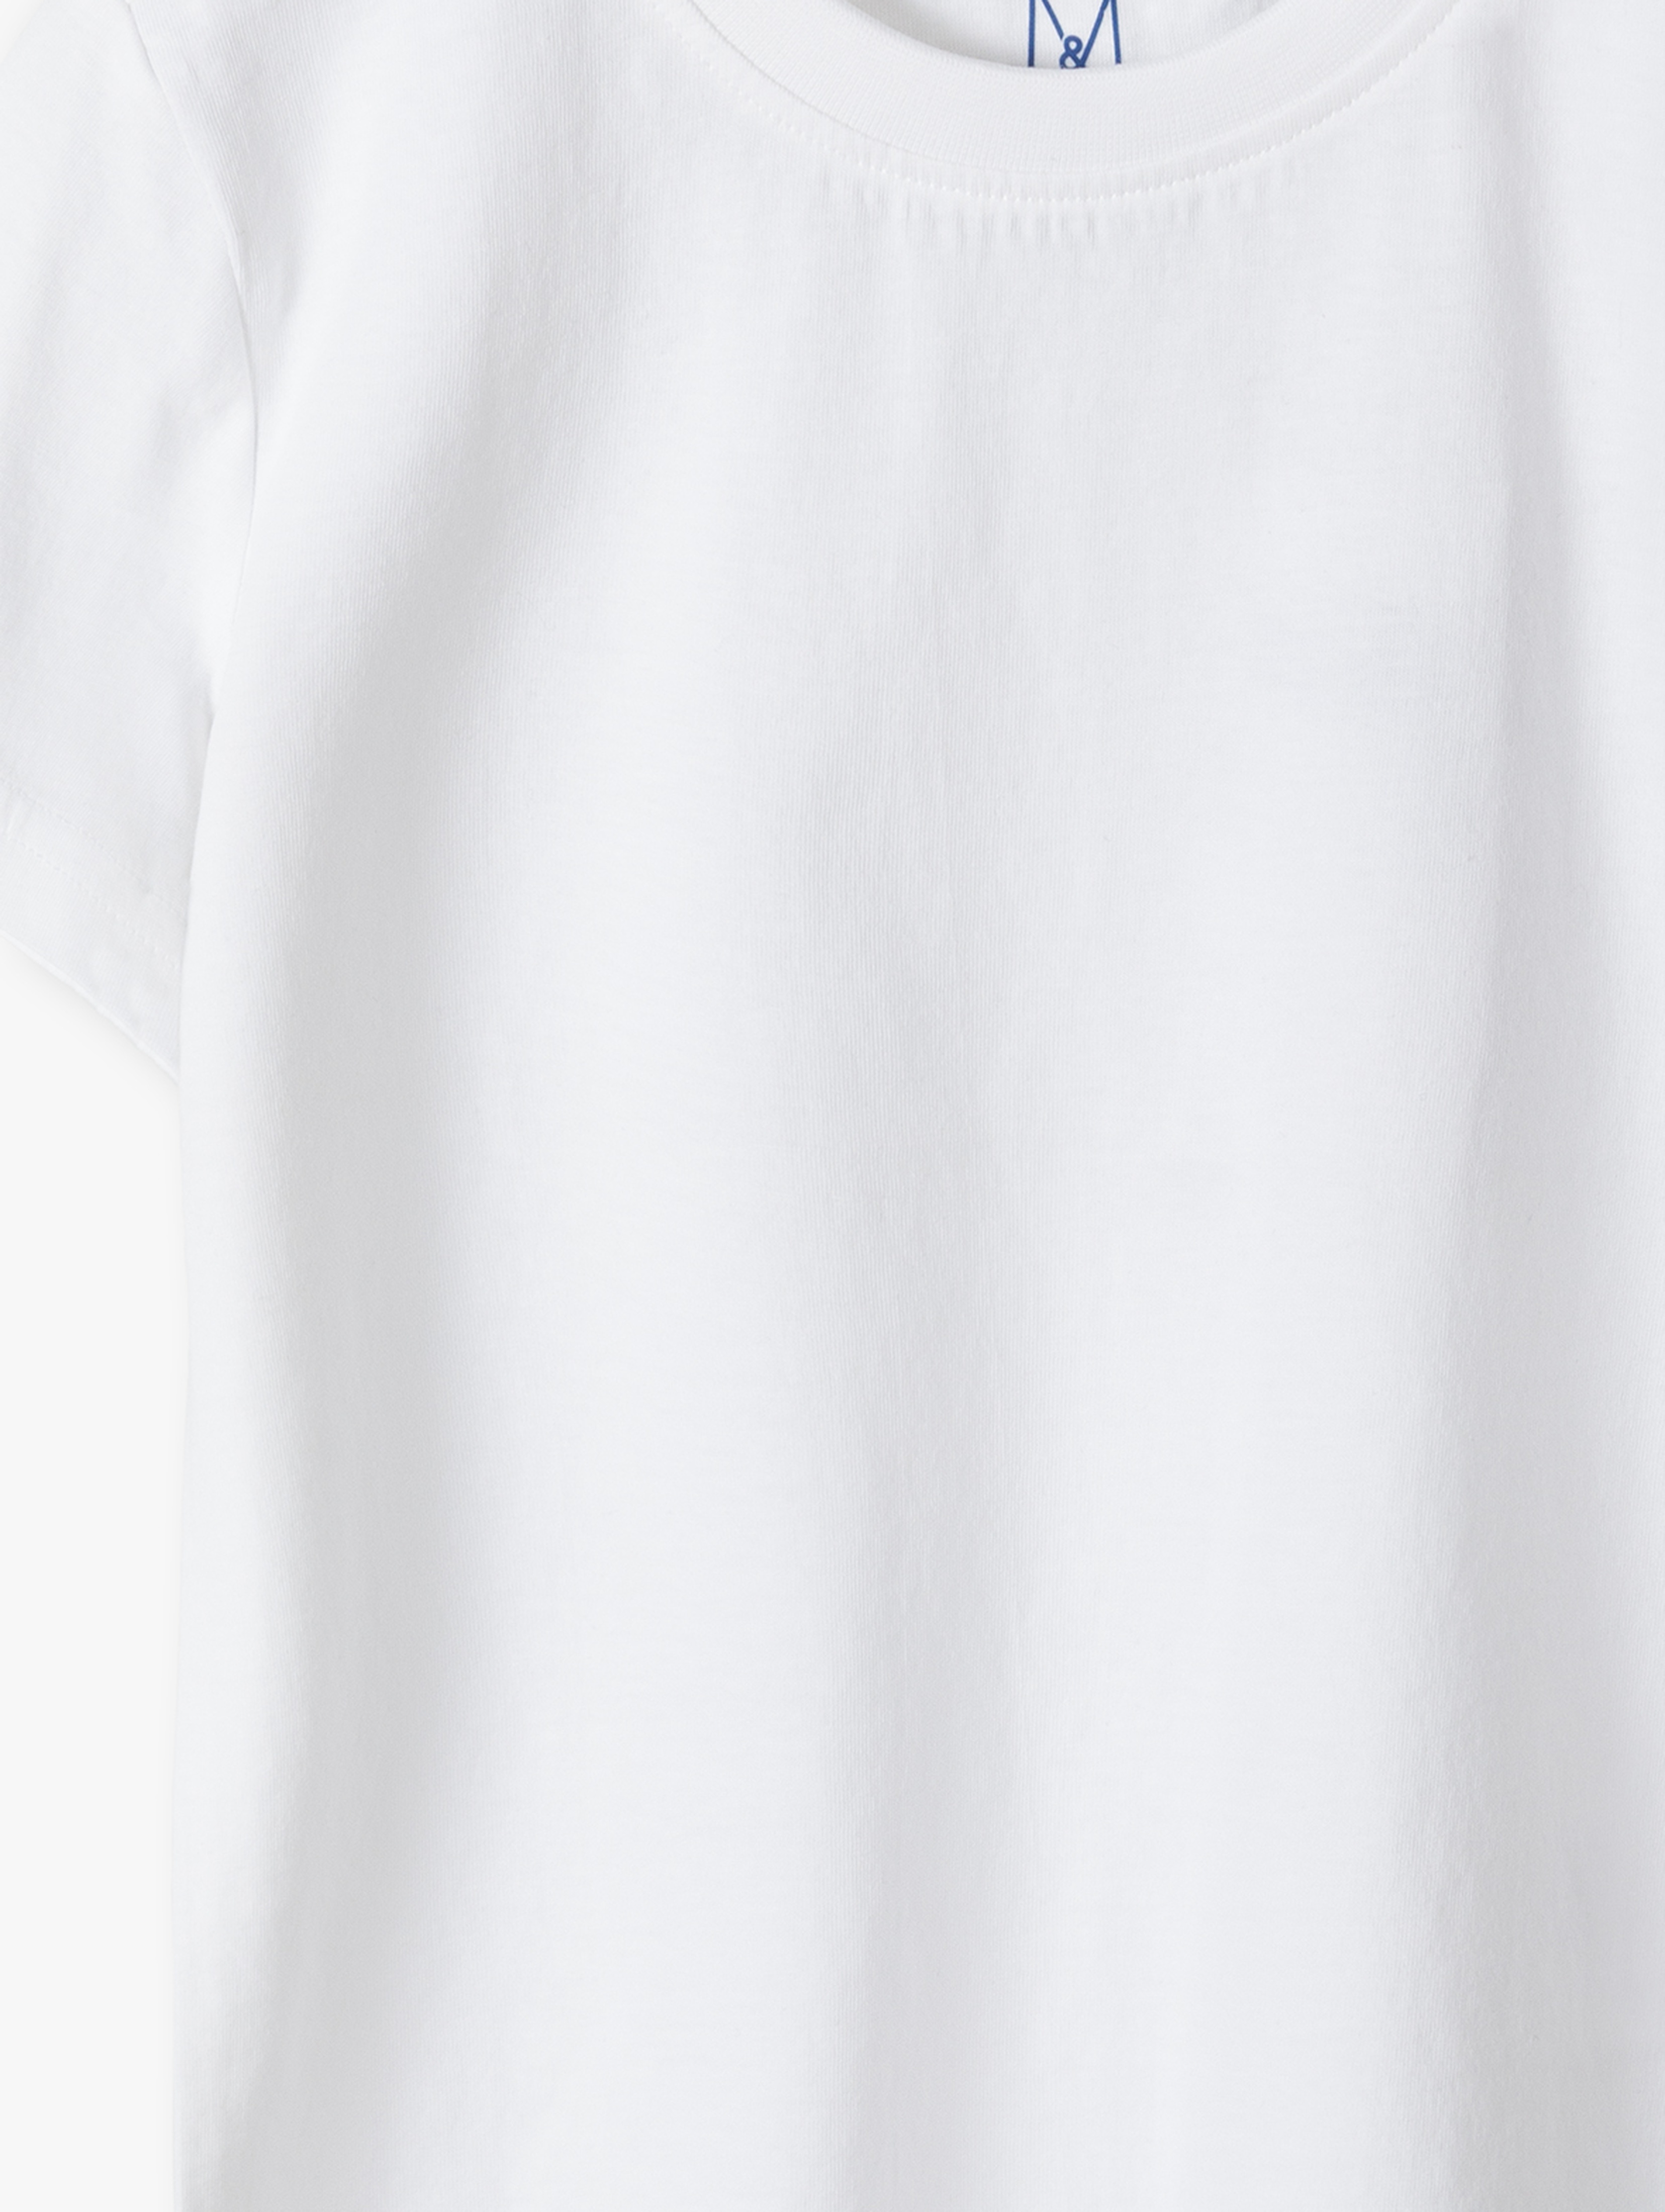 Komplet ubrań na gimnastykę - granatowe szorty + biały t-shirt + worek